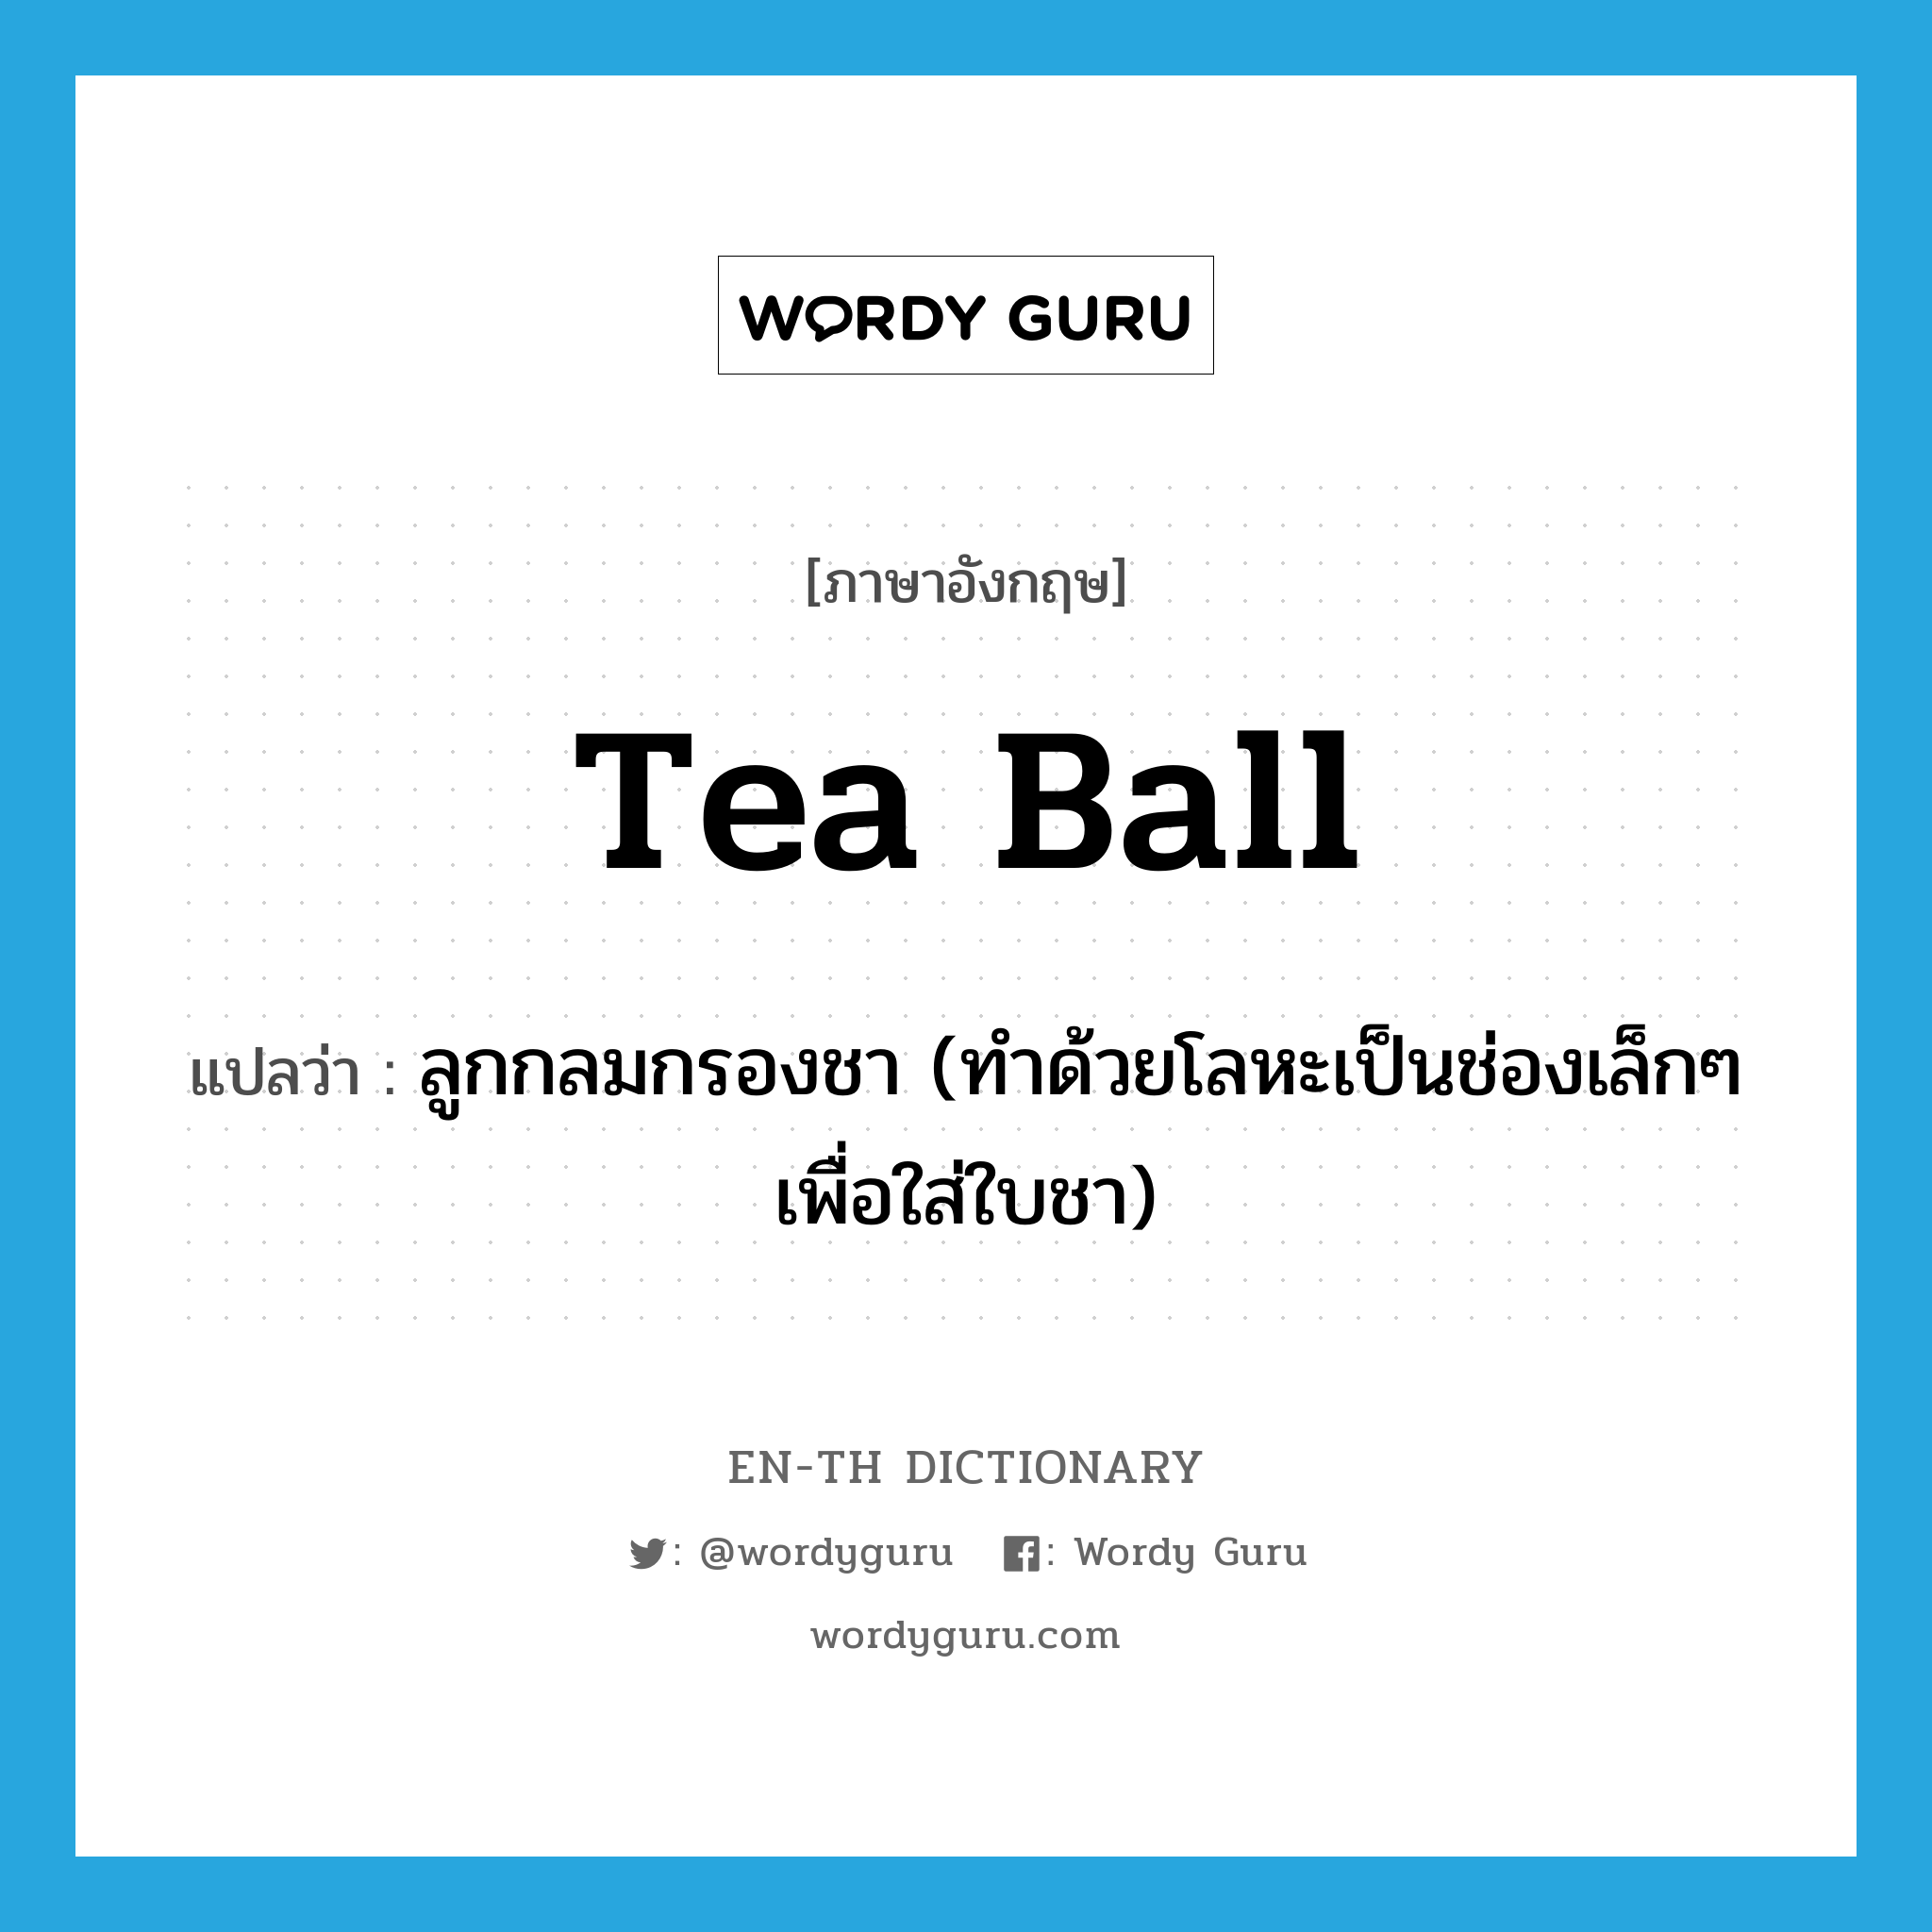 tea ball แปลว่า?, คำศัพท์ภาษาอังกฤษ tea ball แปลว่า ลูกกลมกรองชา (ทำด้วยโลหะเป็นช่องเล็กๆ เพื่อใส่ใบชา) ประเภท N หมวด N